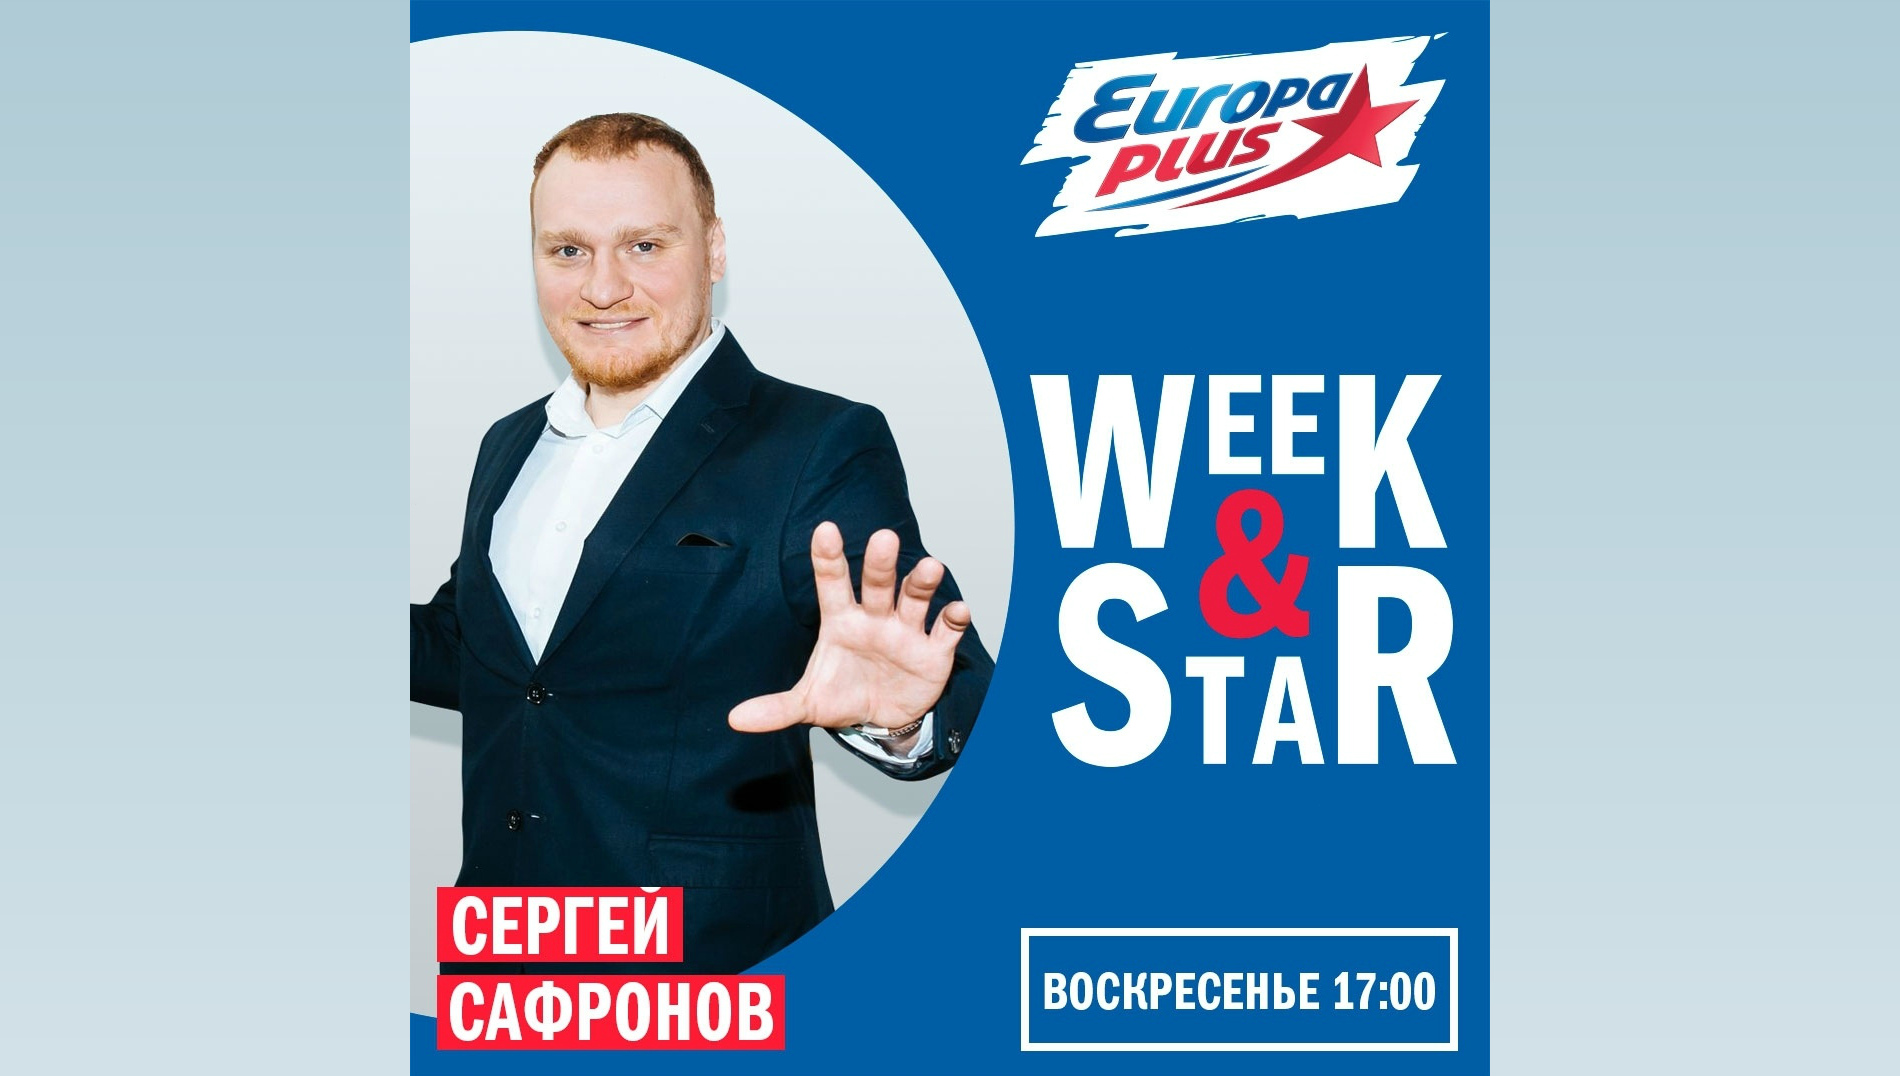 Сергей Сафронов на радио "Europa Plus"